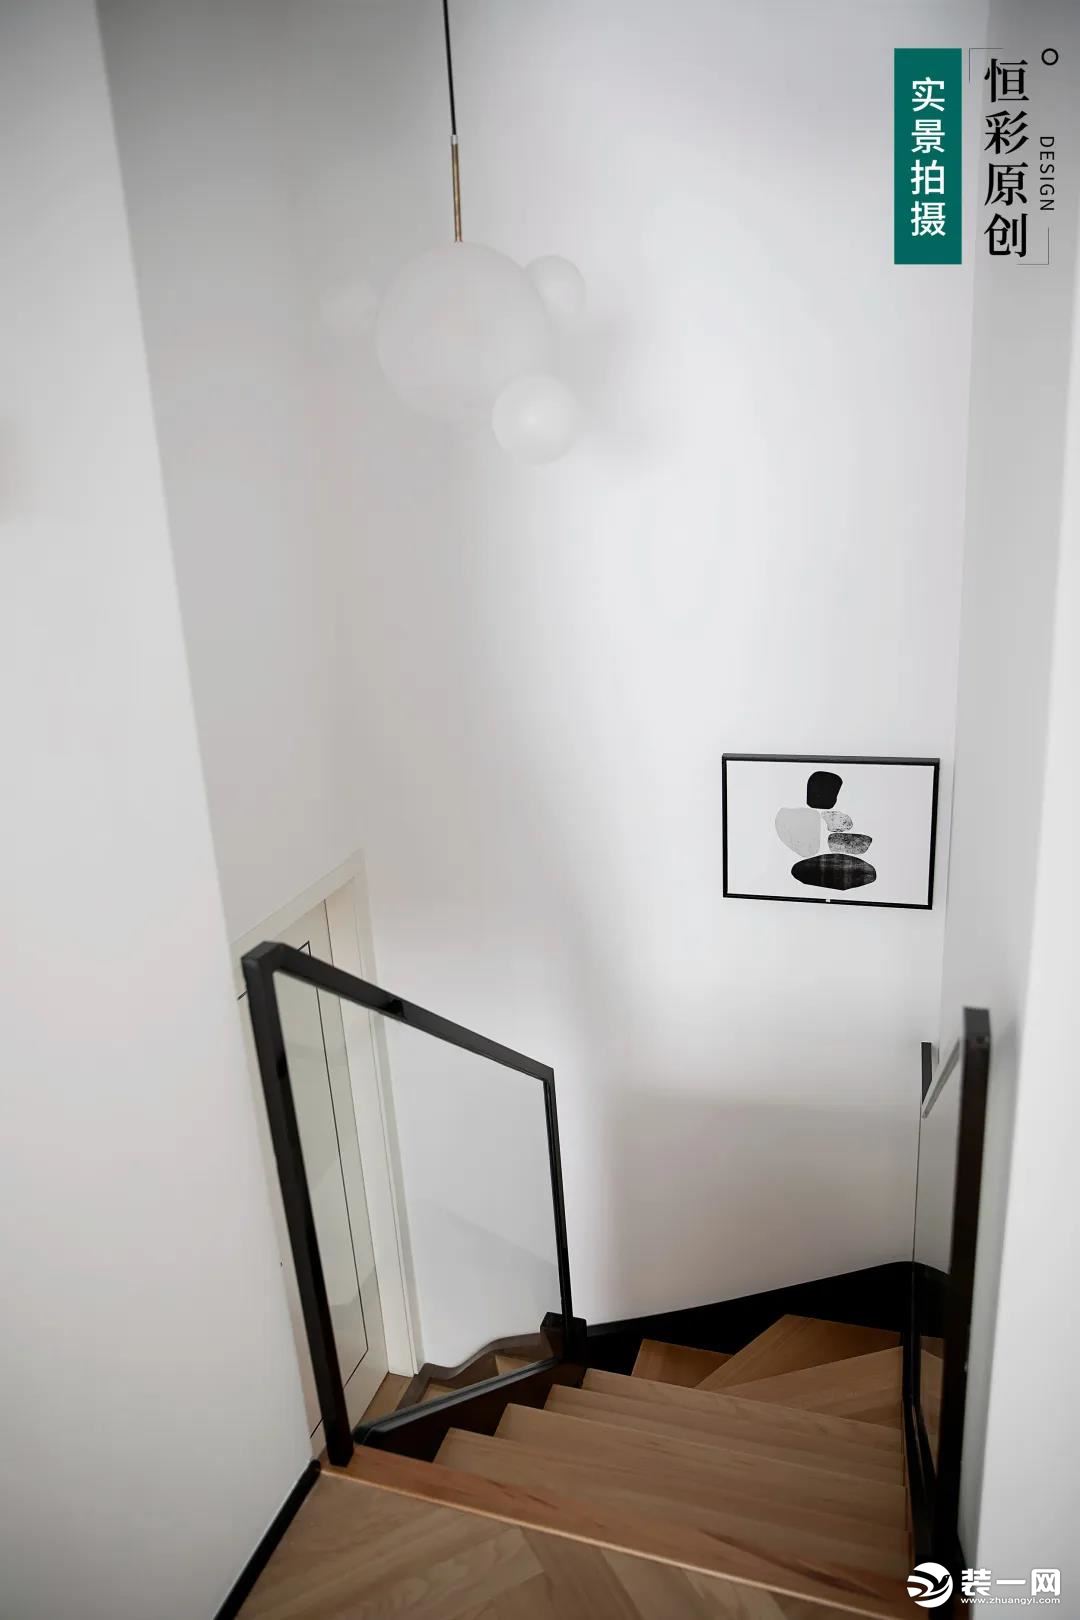  原木楼梯踏步板，搭配透明玻璃扶手，看上去更加通透、清爽。  白色吊灯在大白墙的衬托下存在感很低，不